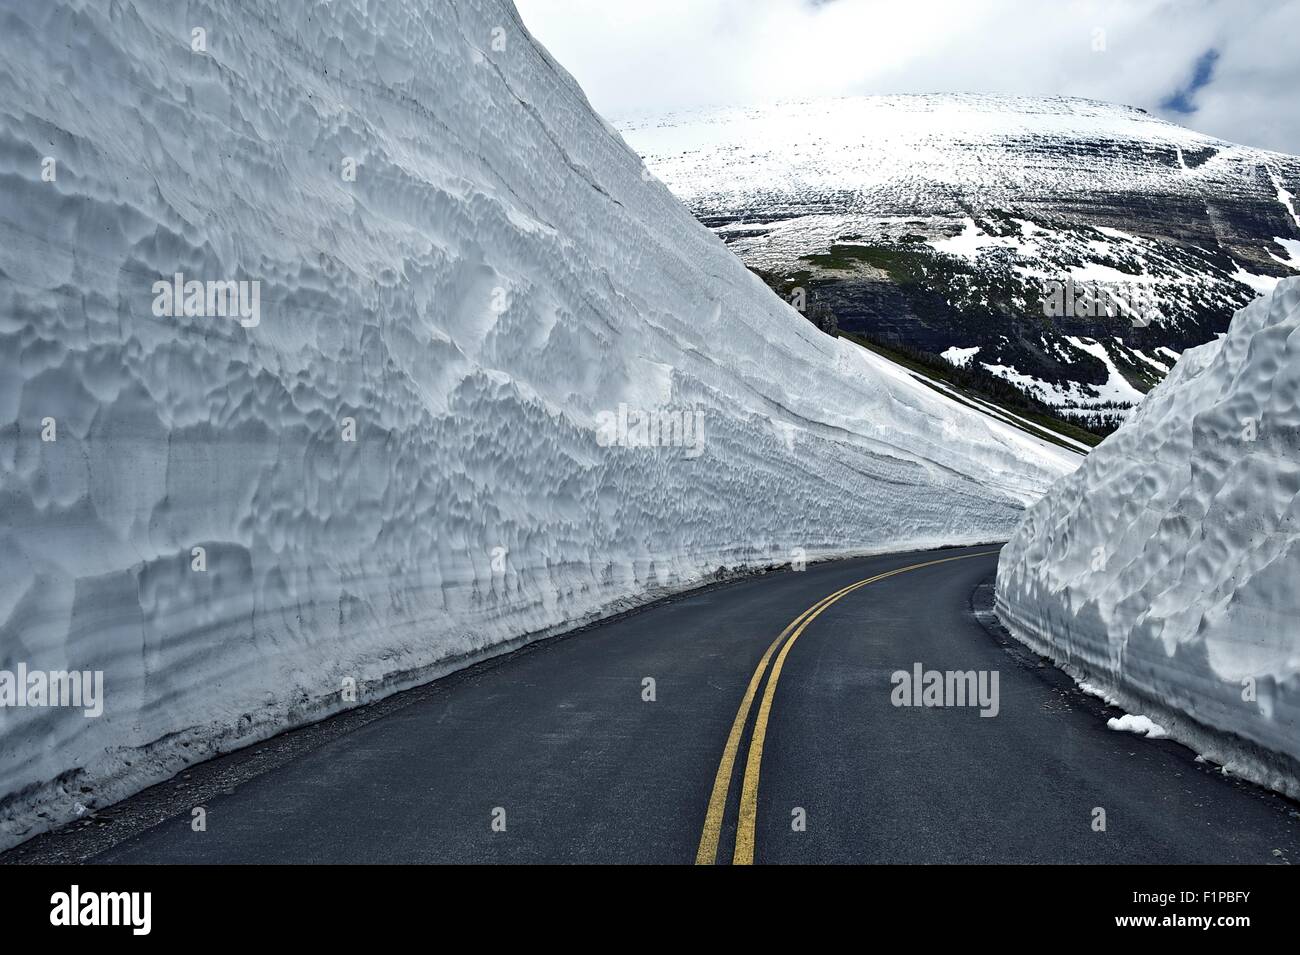 Straße durch Schnee - große Schneefelder auf Seiten der Straße. Glacier Nationalpark - berühmte Straße, so. Montana, USA. Montana Pho Stockfoto